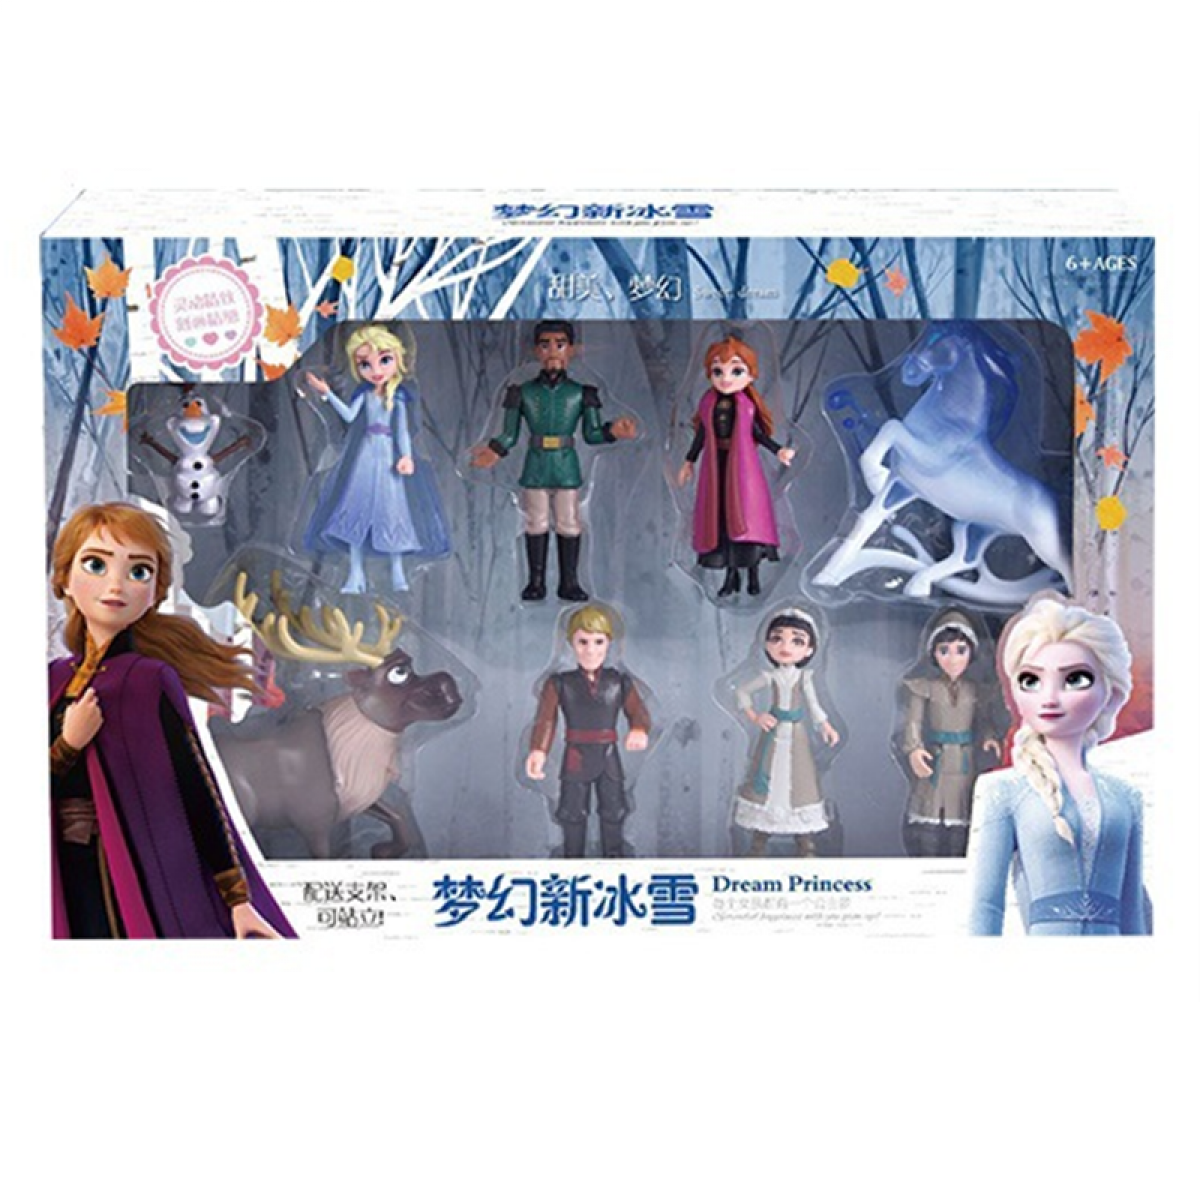 Mangas Universal Hot Disney Frozen 2 Reine des Neiges Elsa Anna PVC Action Picture Olaf Christoph Sven Animation poupée Figurine Jouets pour enfants Cadeaux pour enfants | Action People(Coloré)